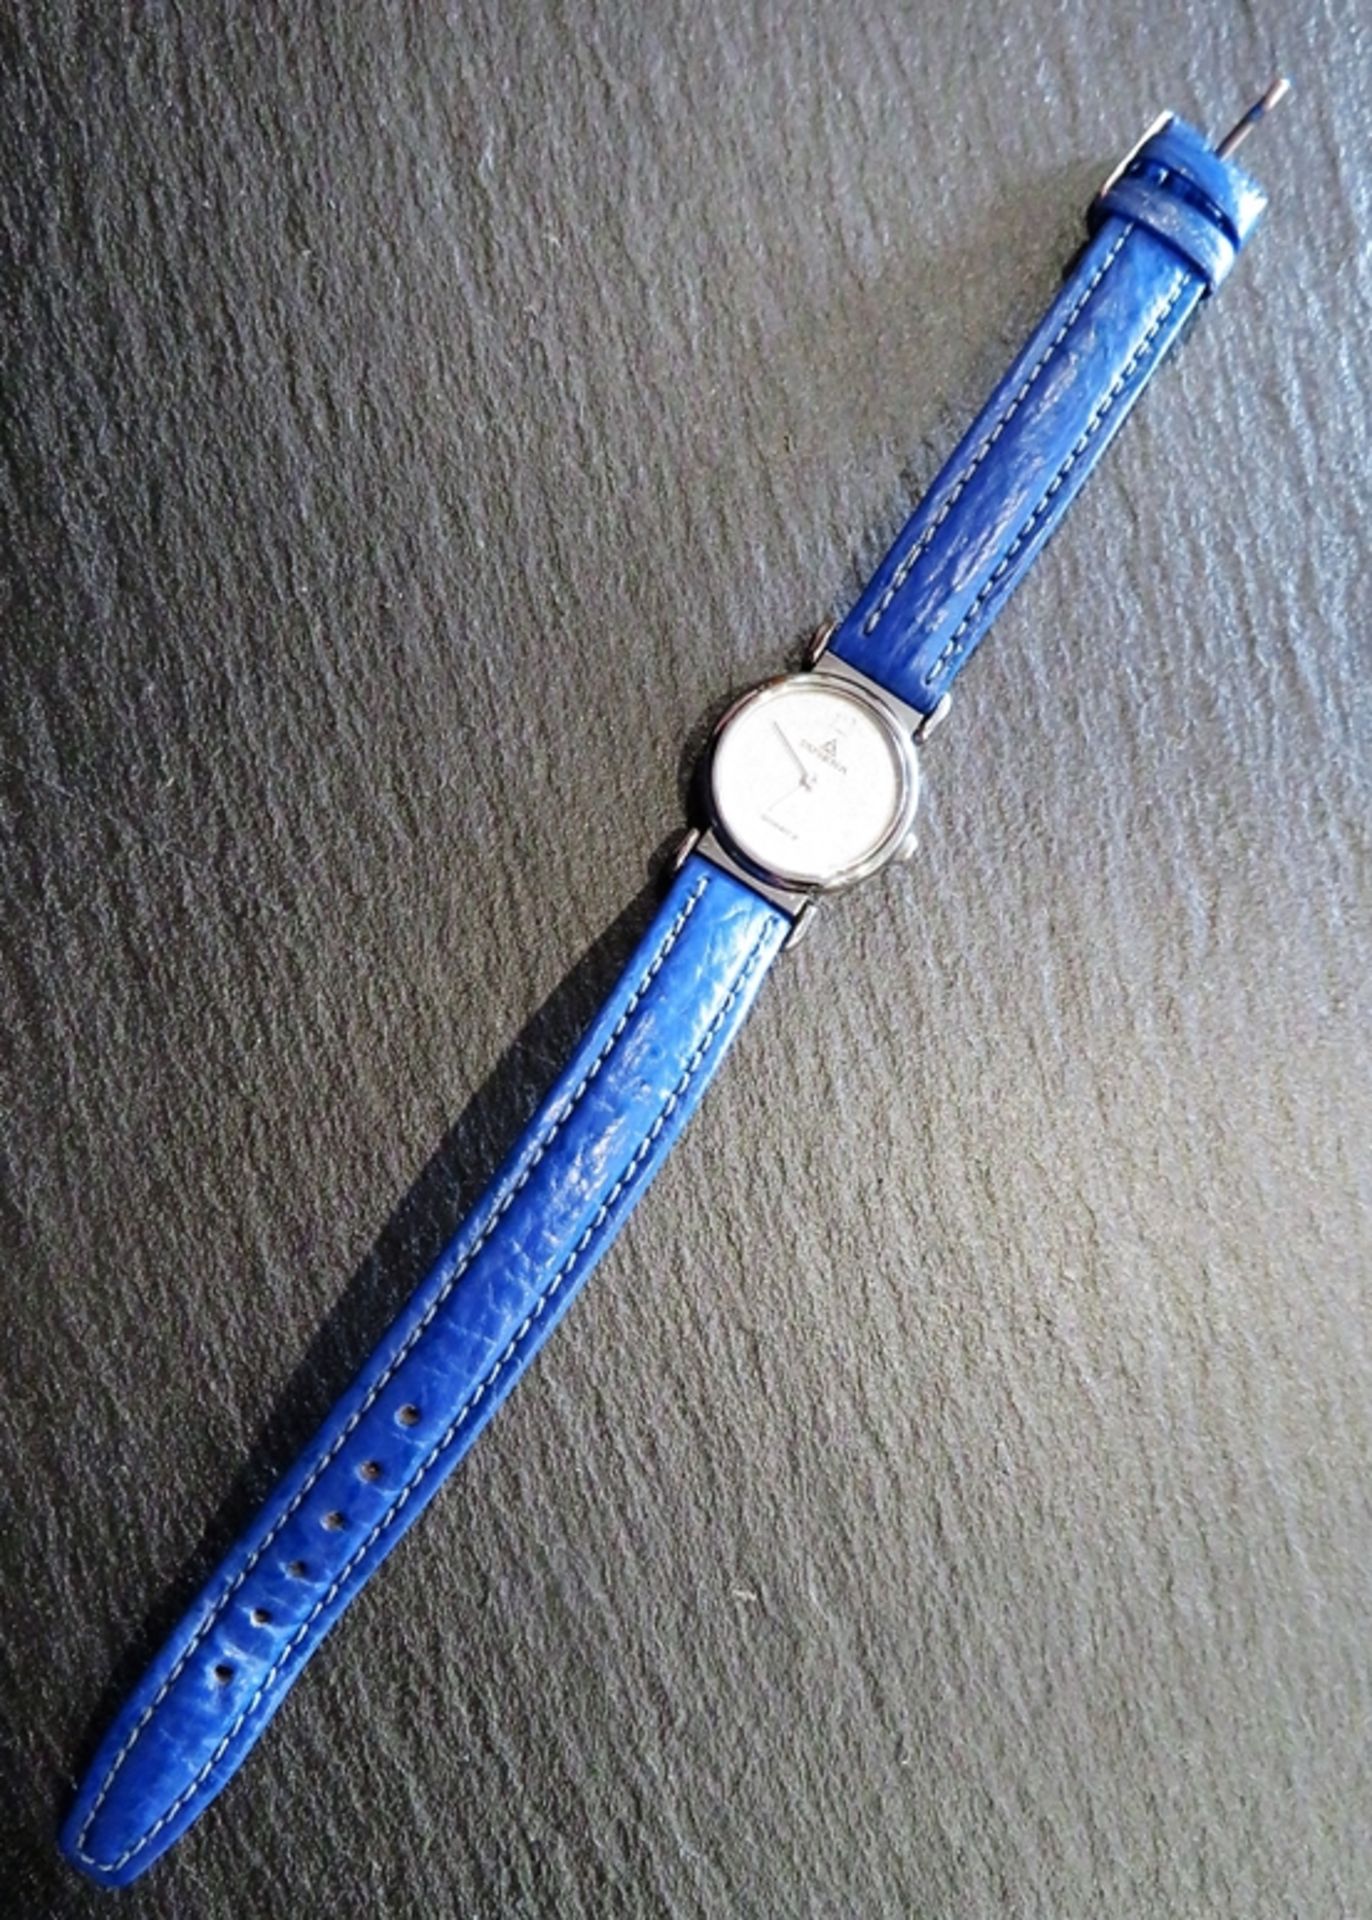 DAU, Dugena, Gehäuse Edelstahl, Quarzwerk, blaues Lederband, Batterie leer, d 2,4 cm. - Image 2 of 2